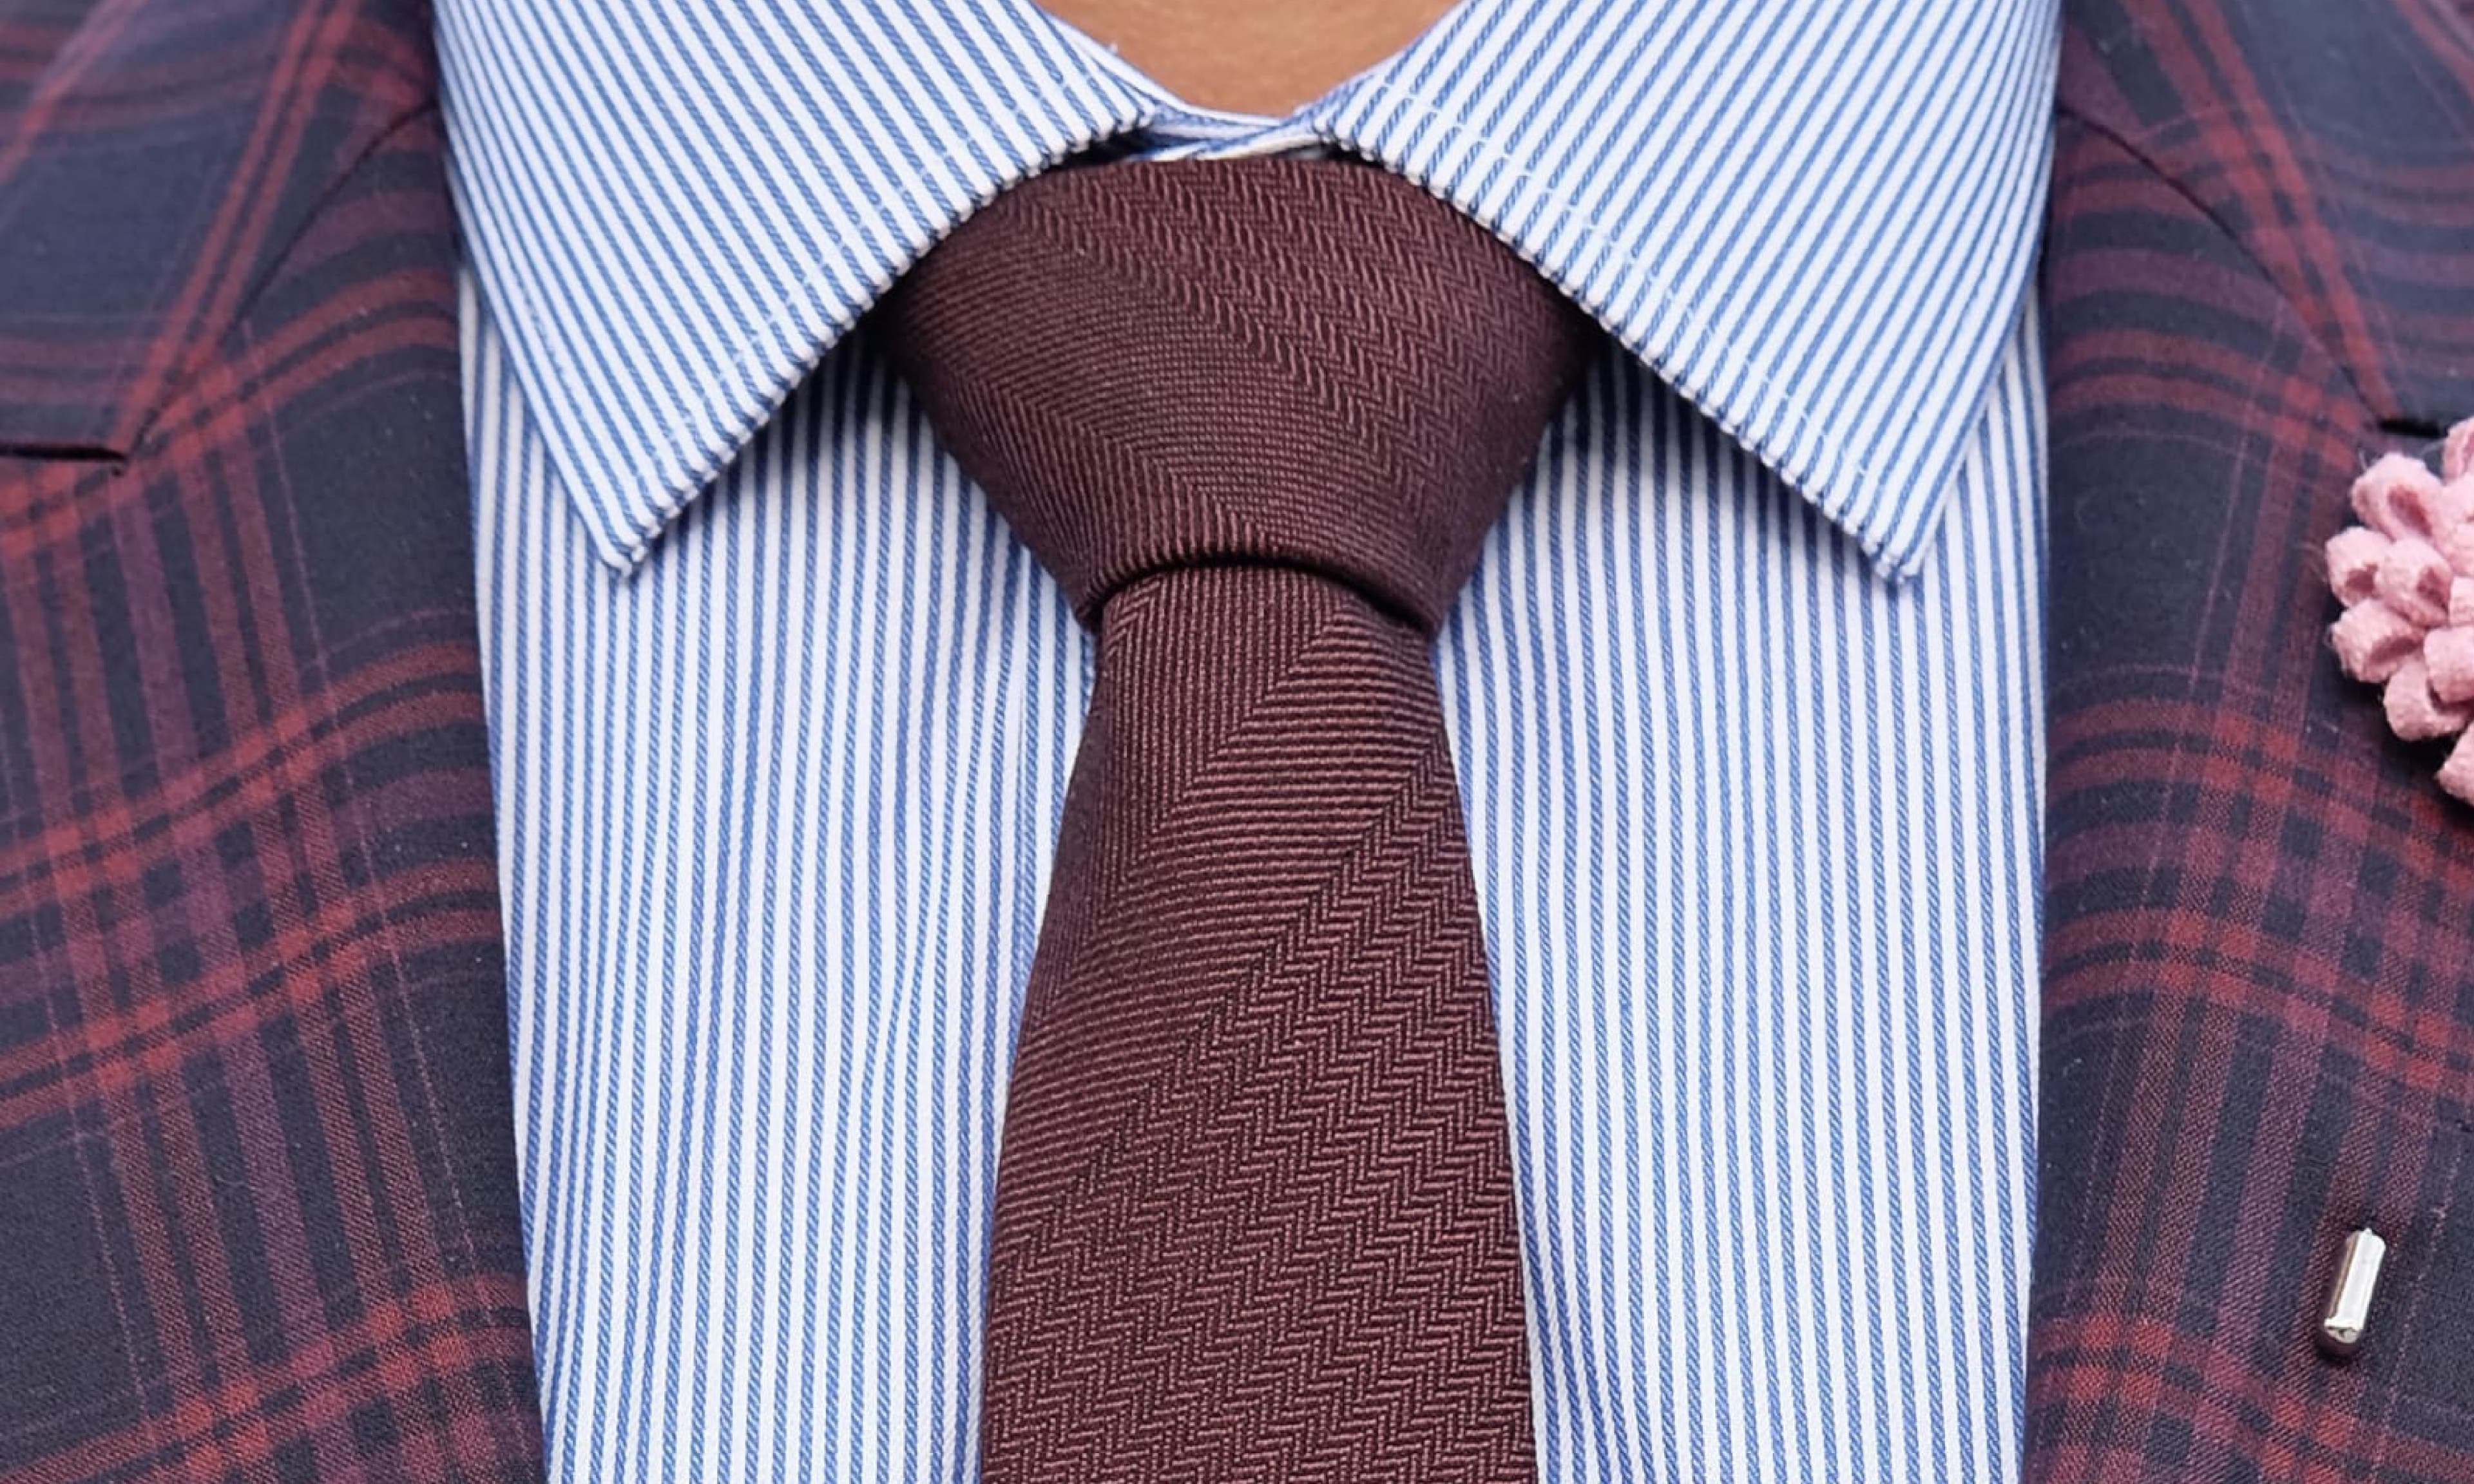 Sådan binder du et slips: 30 forskellige slipseknuder